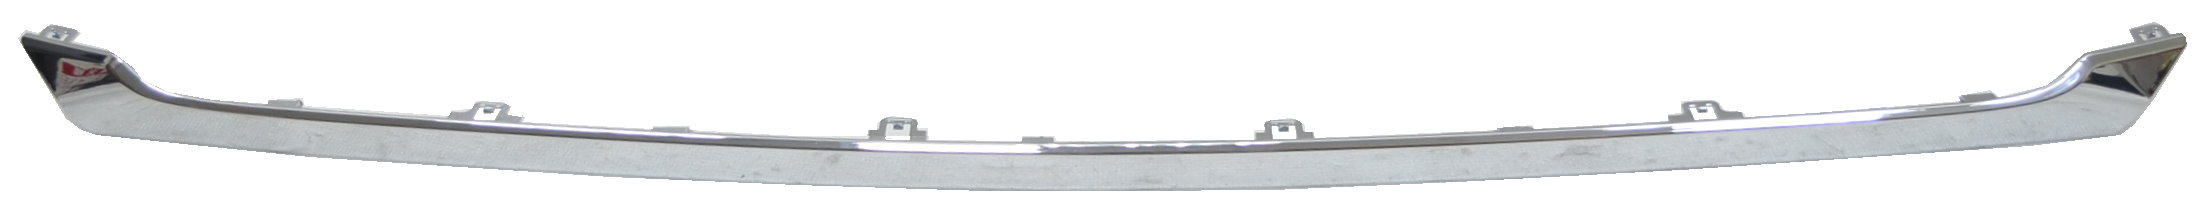 Aftermarket MOLDINGS for NISSAN - PATHFINDER, PATHFINDER,17-20,Front bumper molding